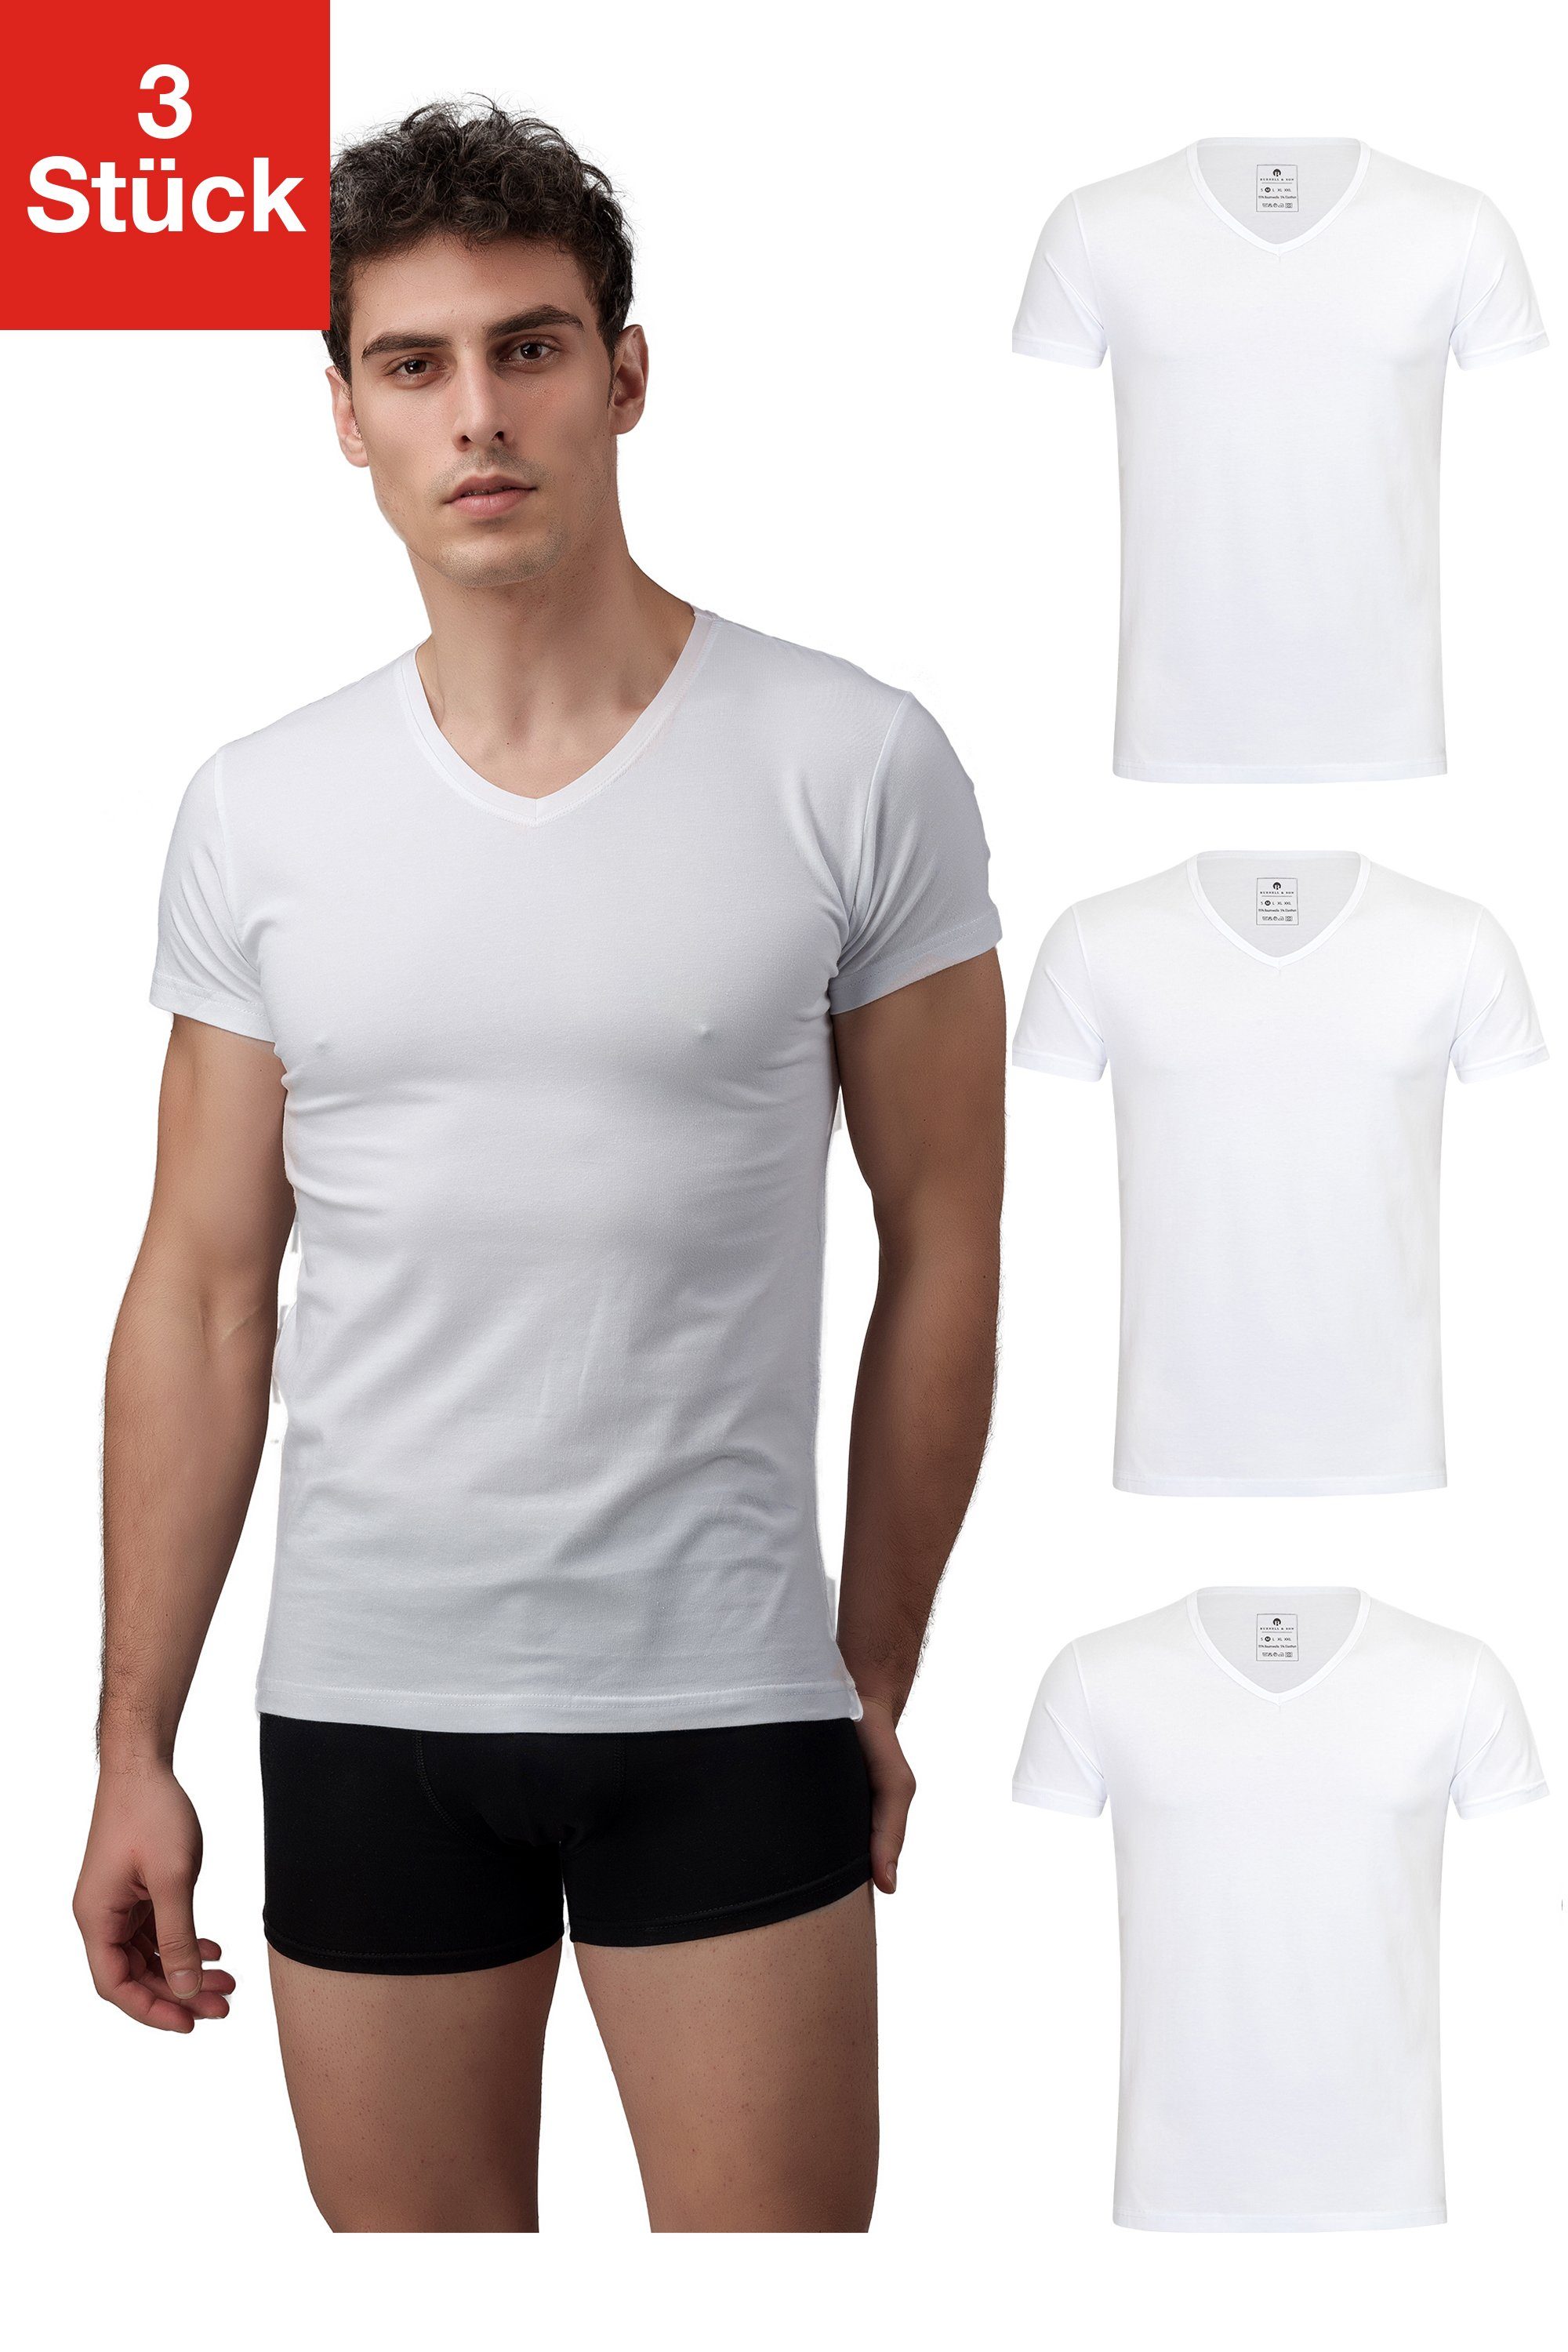 Burnell & Son Unterhemd »T-Shirt Business mit Kurzarm und V-Ausschnitt für  Herren aus Baumwolle« (3 Stück), Feinripp, extra lang - Basic Slim Fit  online kaufen | OTTO